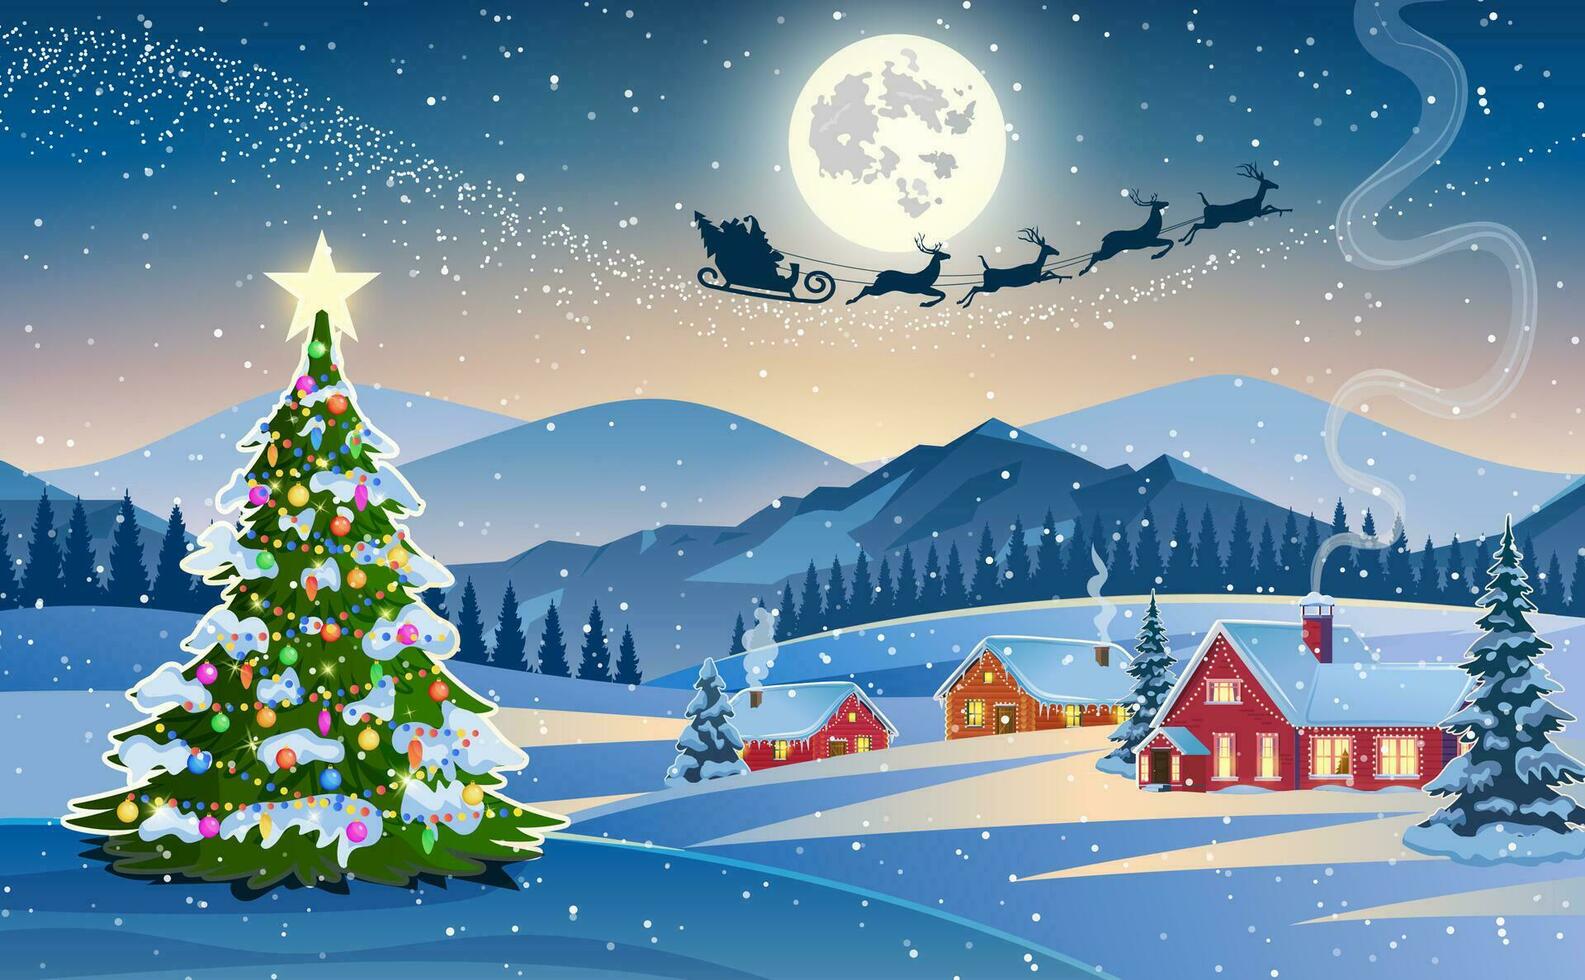 Winter Schnee Landschaft und Häuser mit Weihnachten Baum. Konzept zum Gruß oder Post- Karte. Hintergrund mit Mond und das Silhouette von Santa claus fliegend auf ein Schlitten. Vektor Illustration.